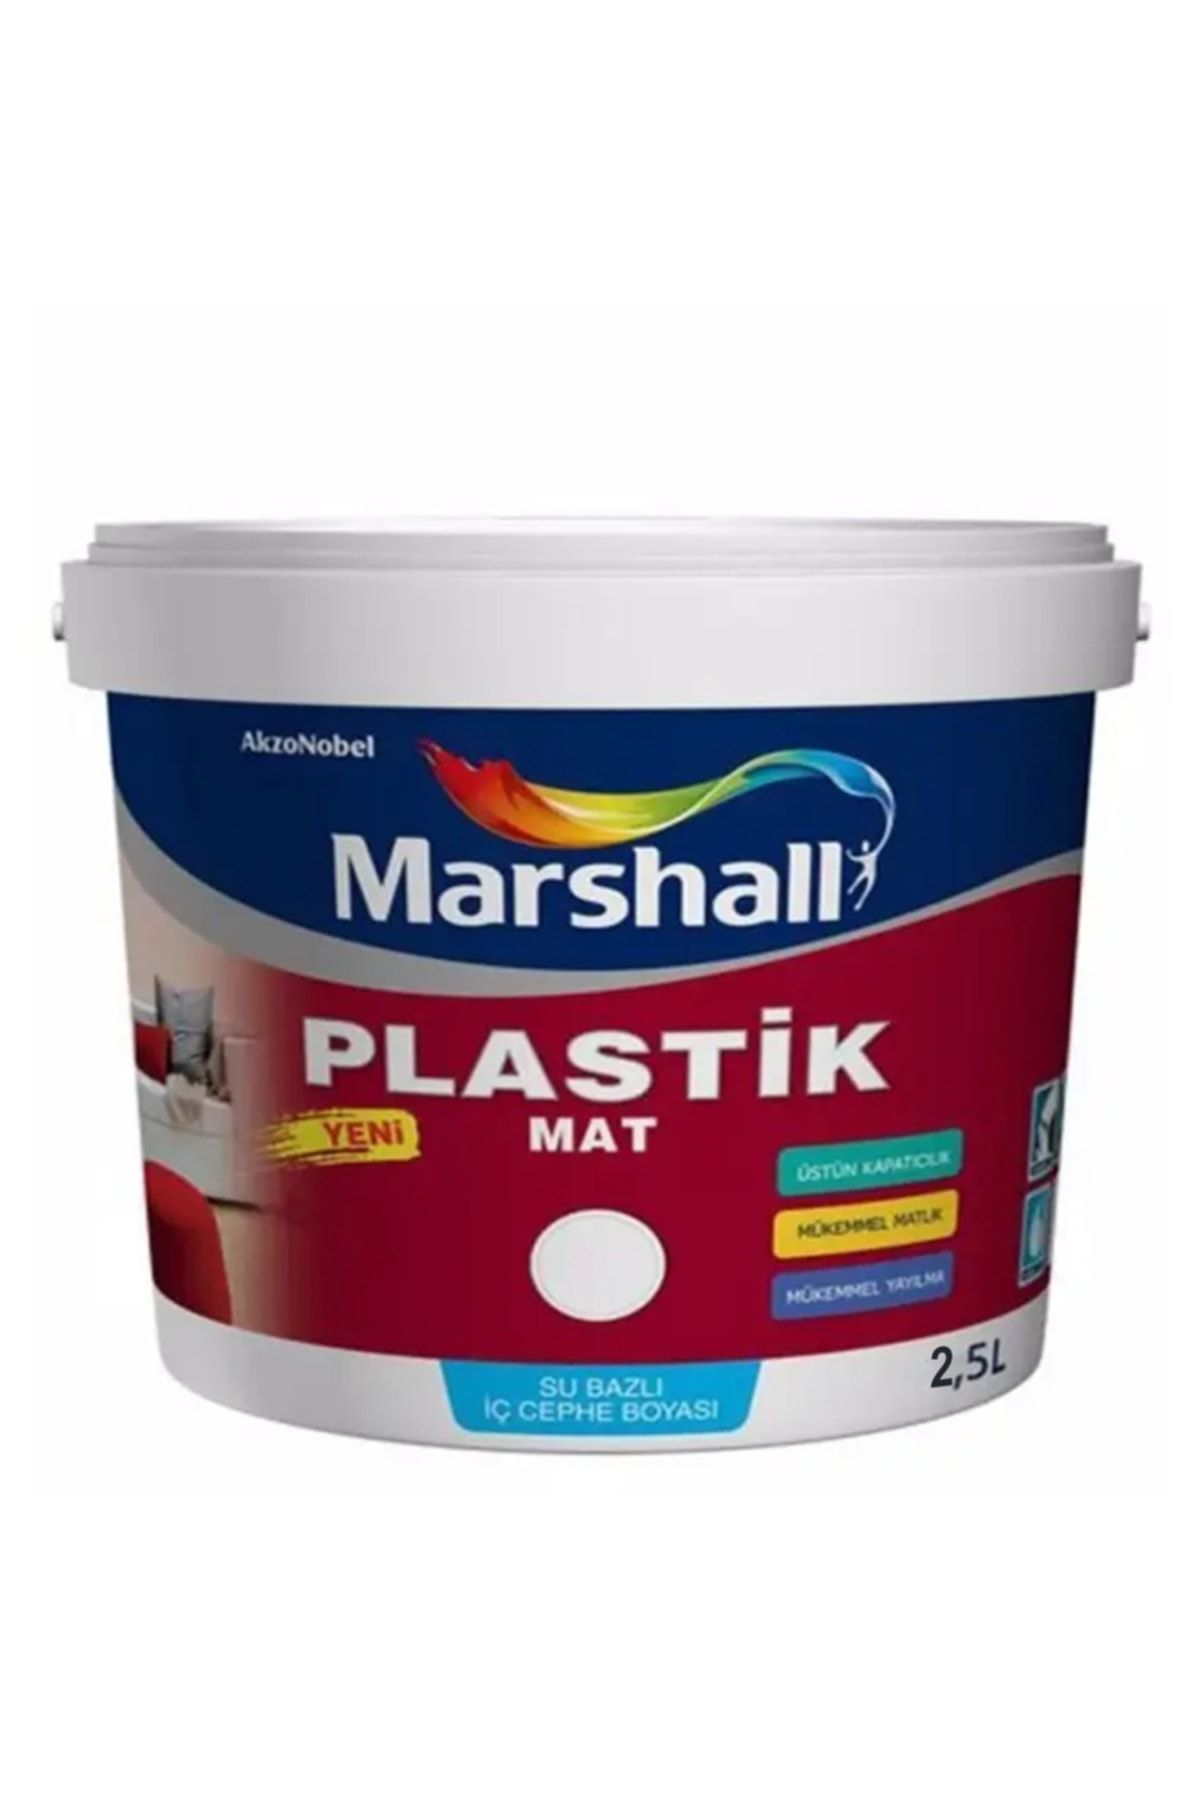 Marshall Plastik Mat Silinebilir Iç Cephe Boyası Mor Salkım 2,5 Lt (3,5 Kg)